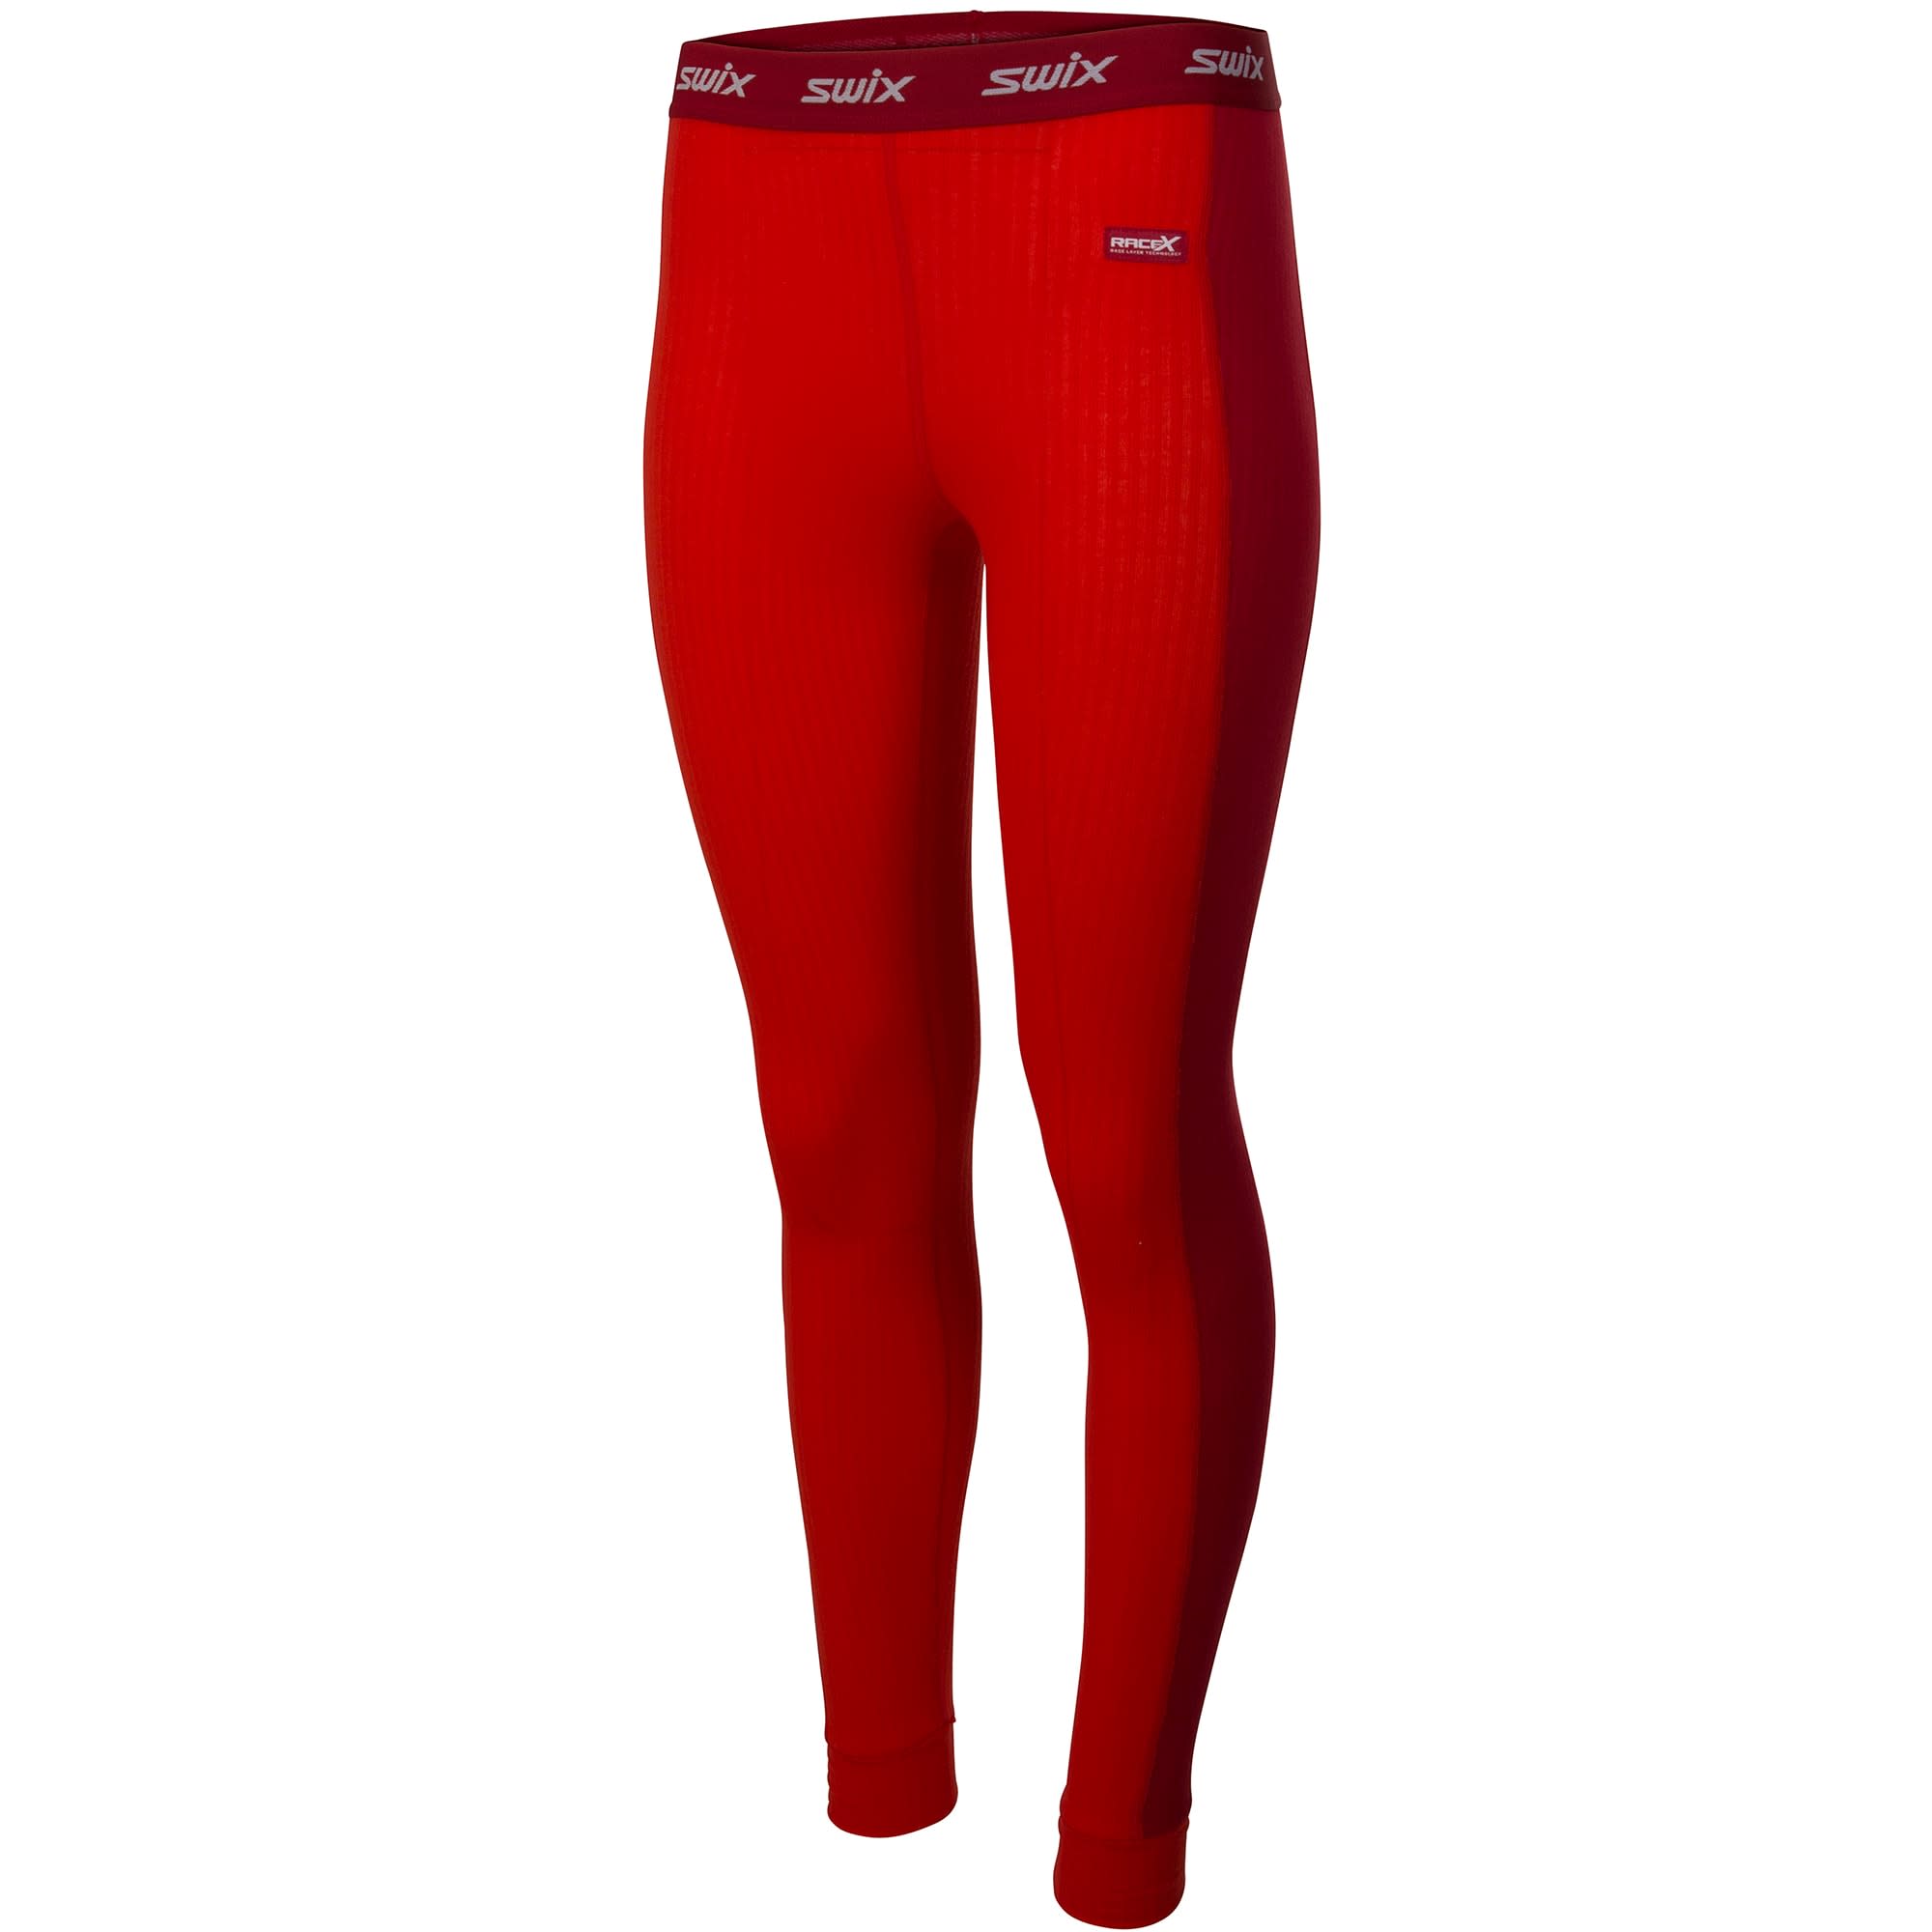 swix Women’s RaceX Bodywear Pants Fiery red